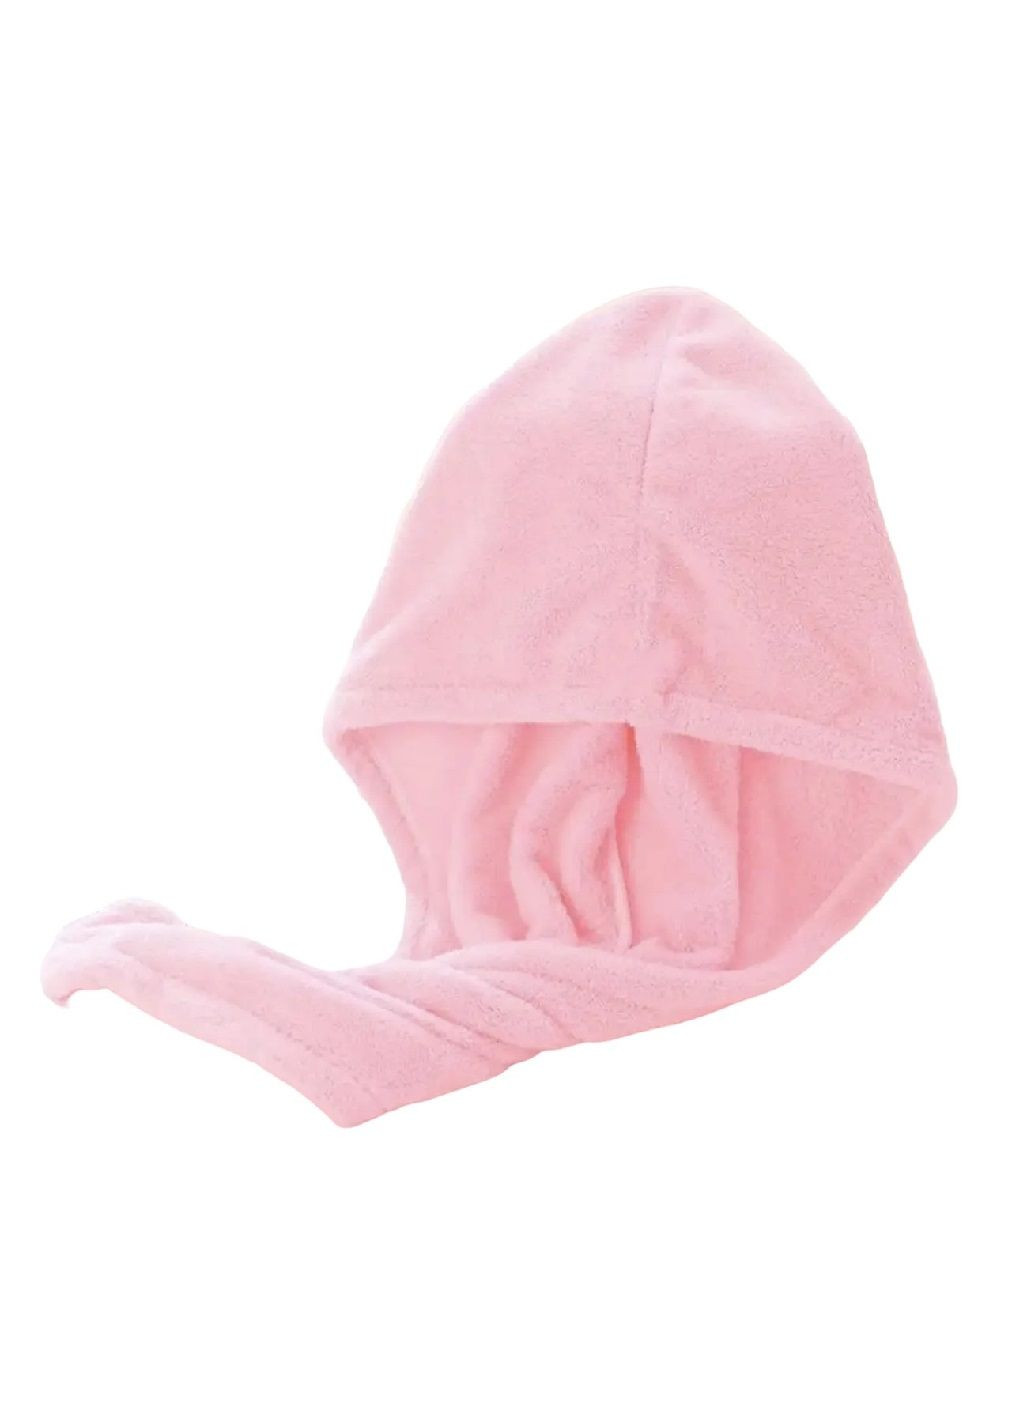 Unbranded полотенце чалма тюрбан для сушки головы волос после купания в сауне душе ванной микрофибра 64х25 см (476912-prob) нежно-розовое однотонный розовый производство -